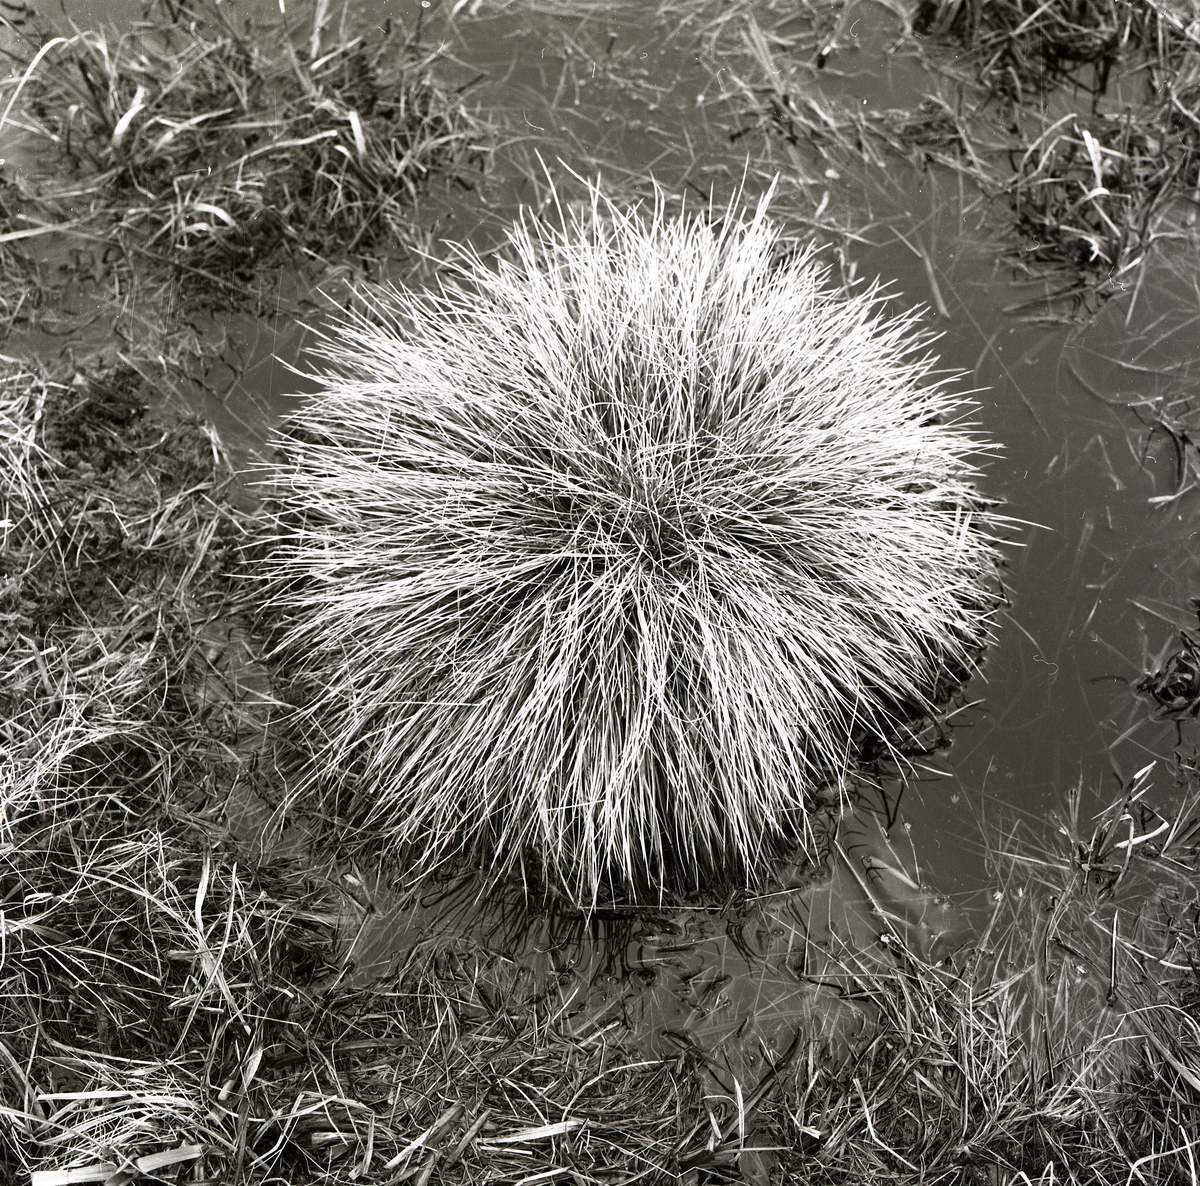 En grästuva i vatten och lera, 1977.